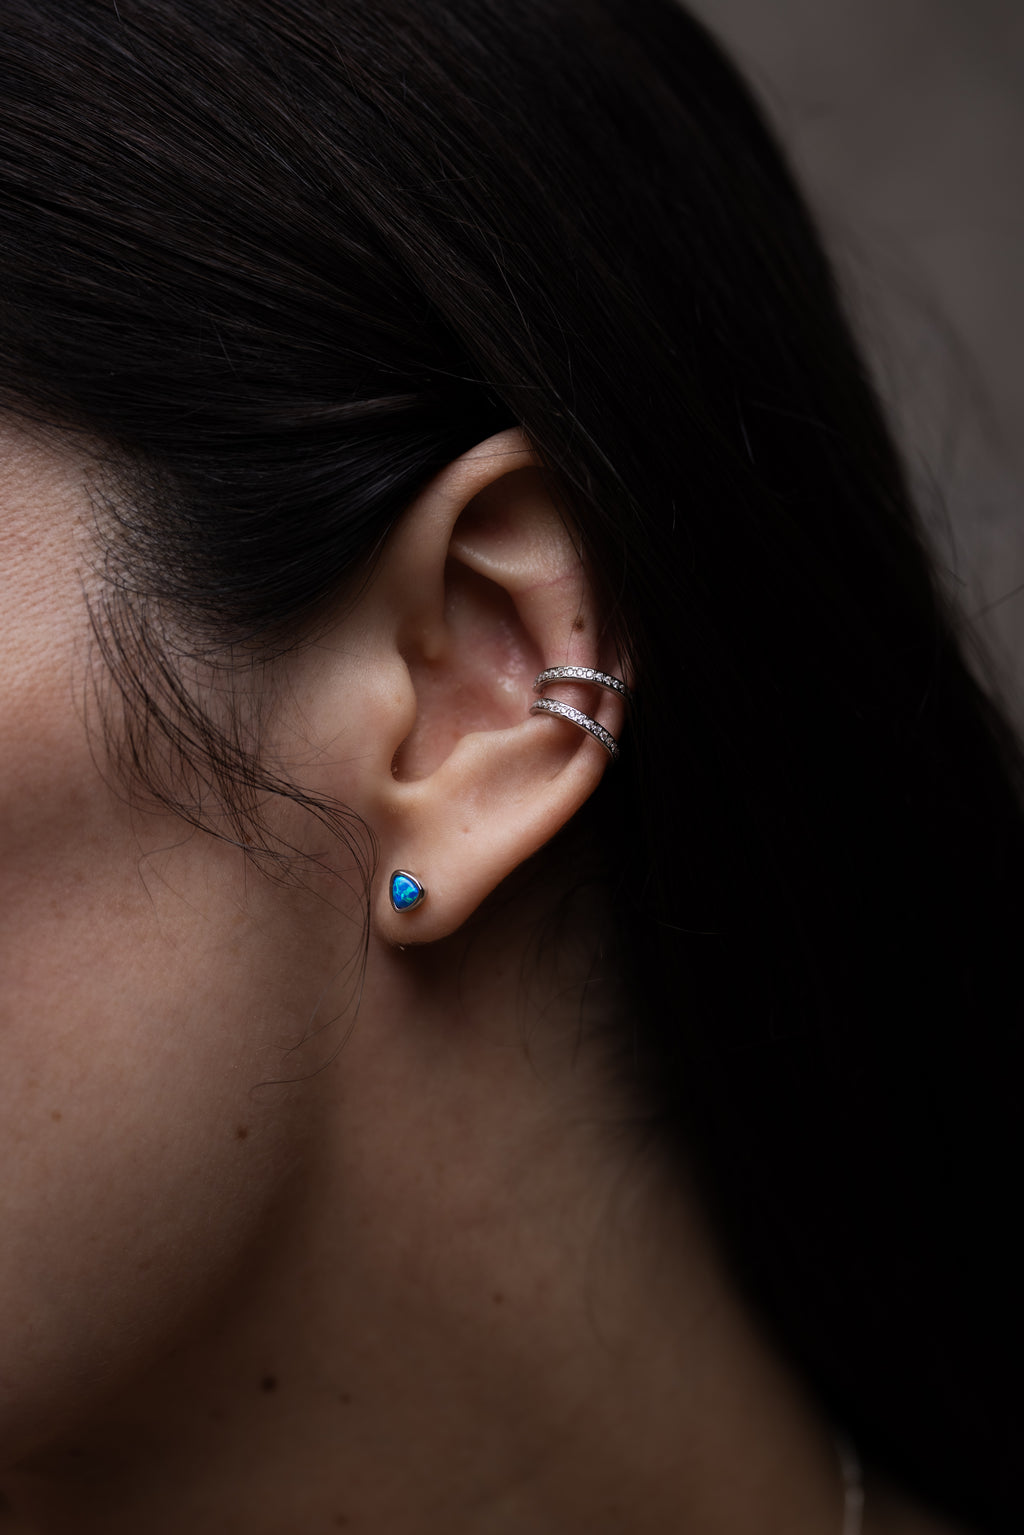 Blue Opal Trillion Earrings in Silver